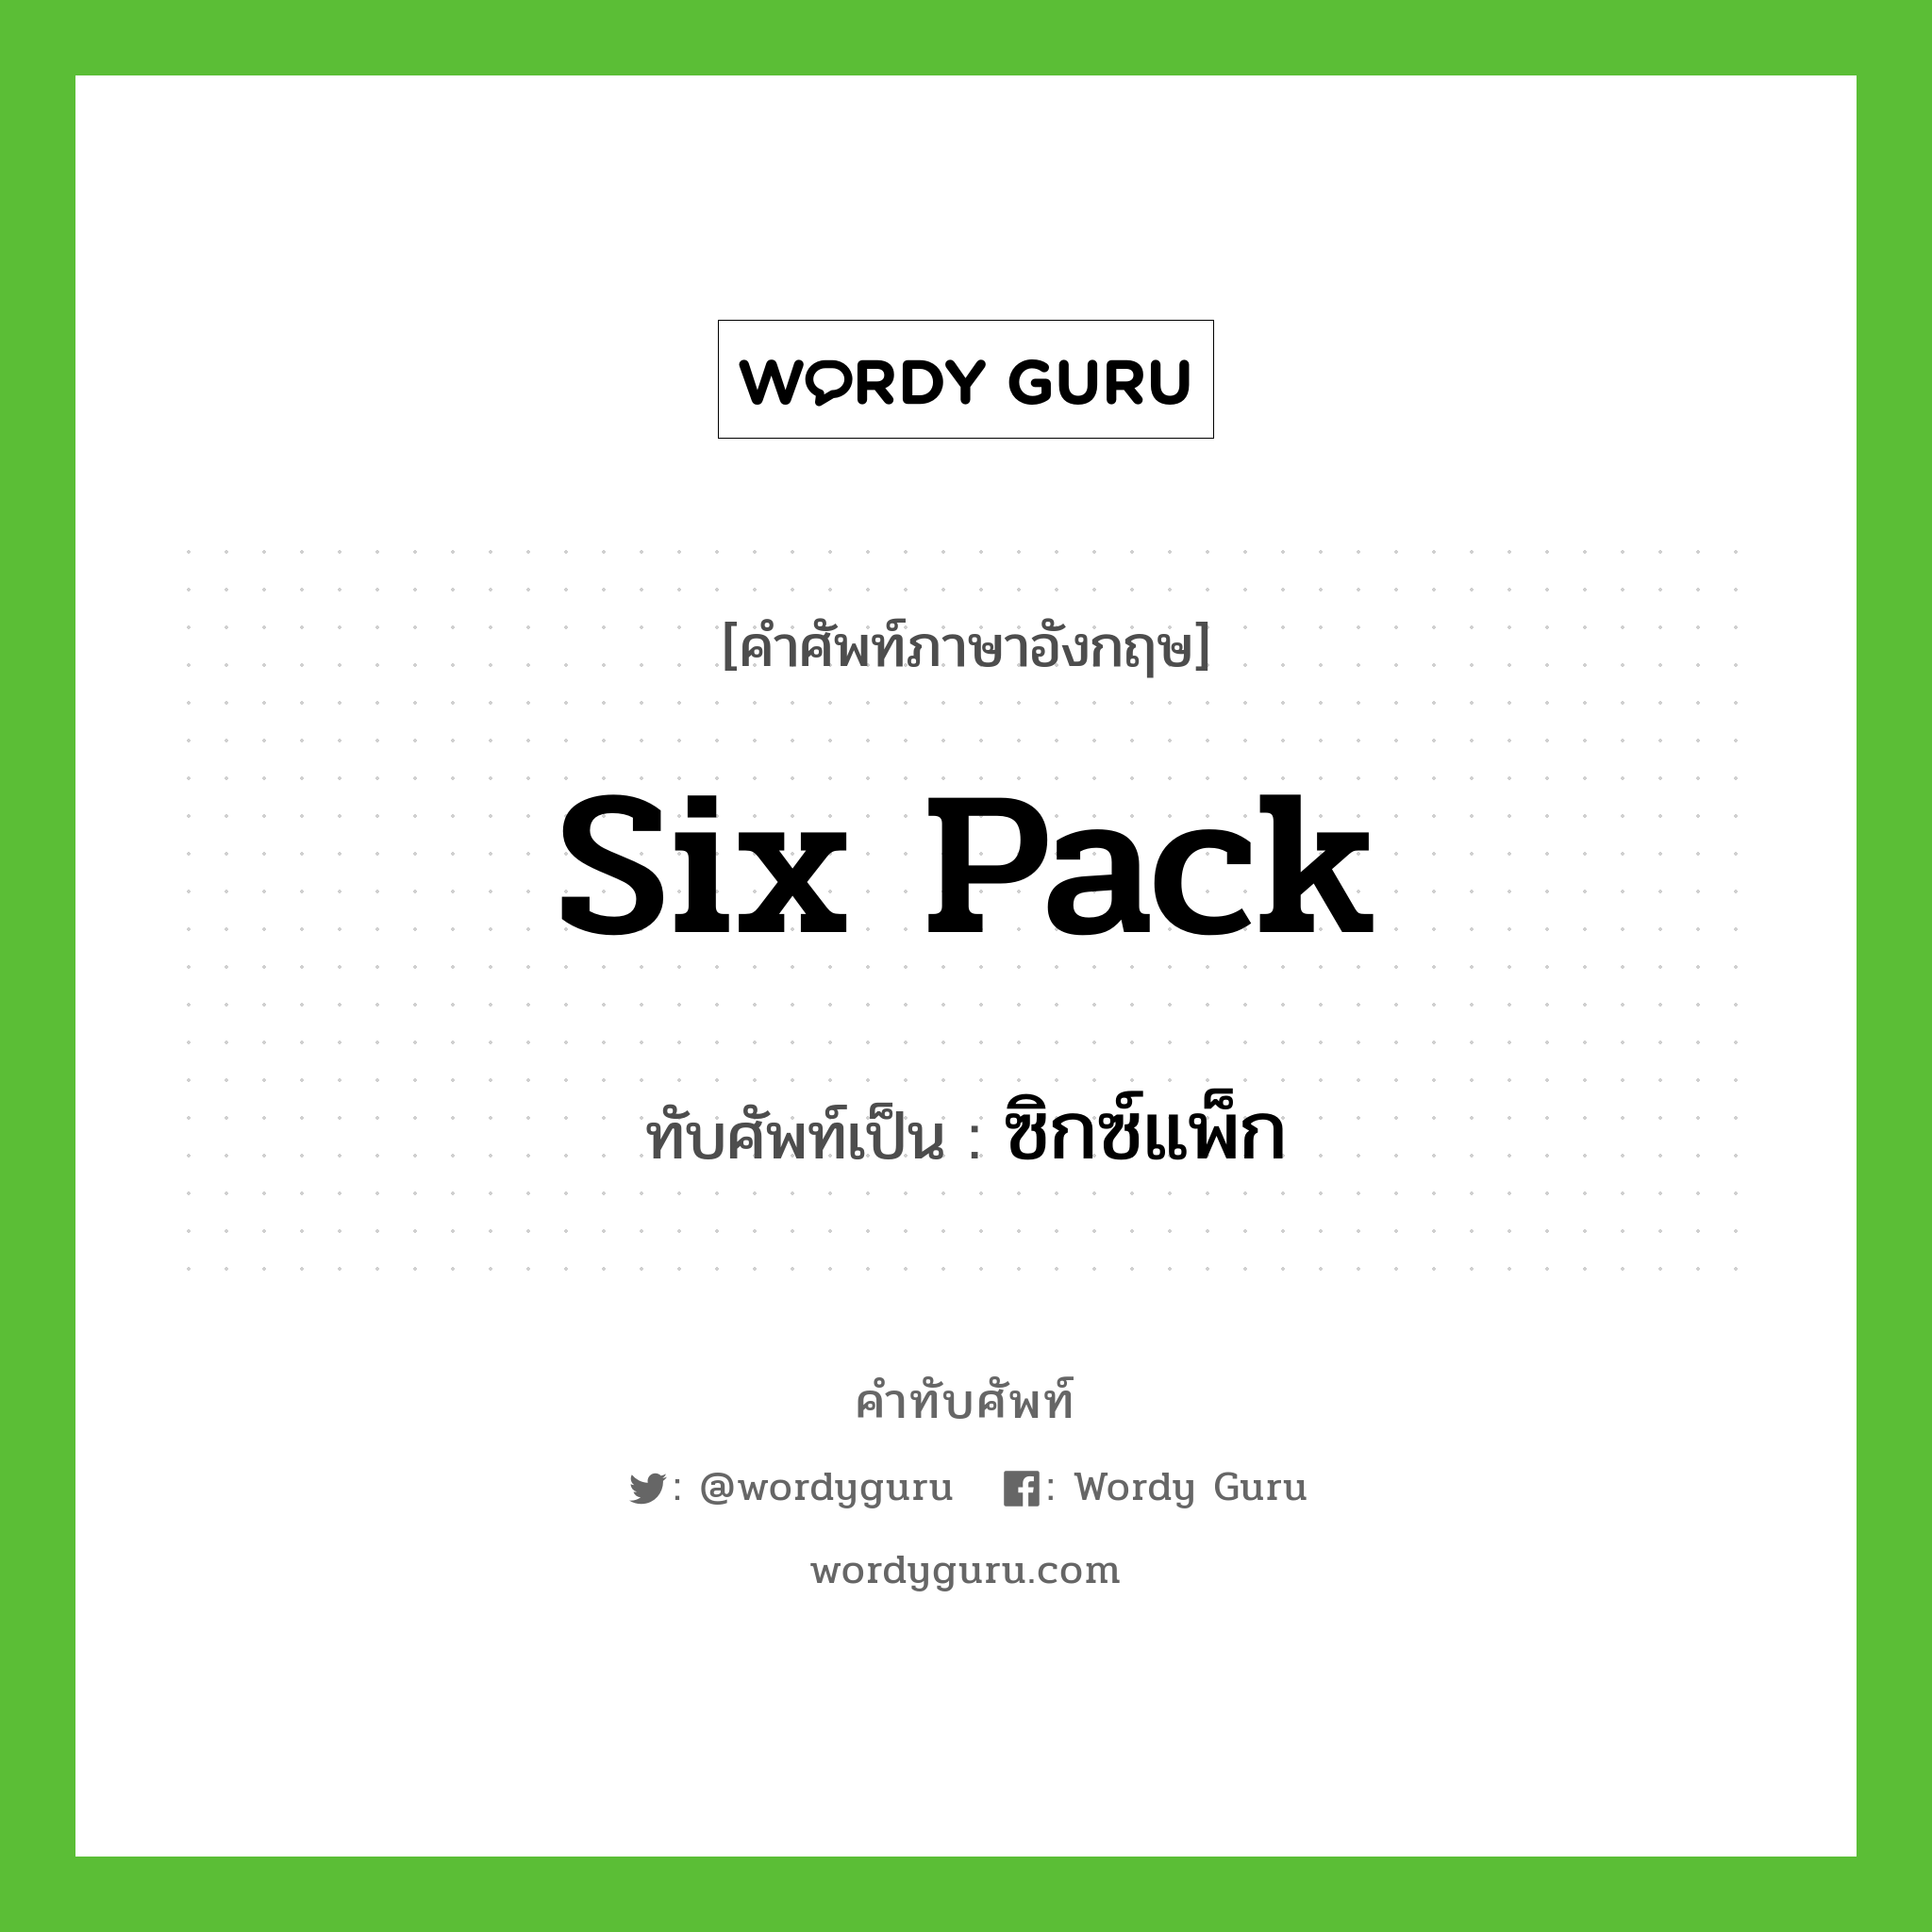 Six pack เขียนเป็นคำไทยว่าอะไร?, คำศัพท์ภาษาอังกฤษ Six pack ทับศัพท์เป็น ซิกซ์แพ็ก